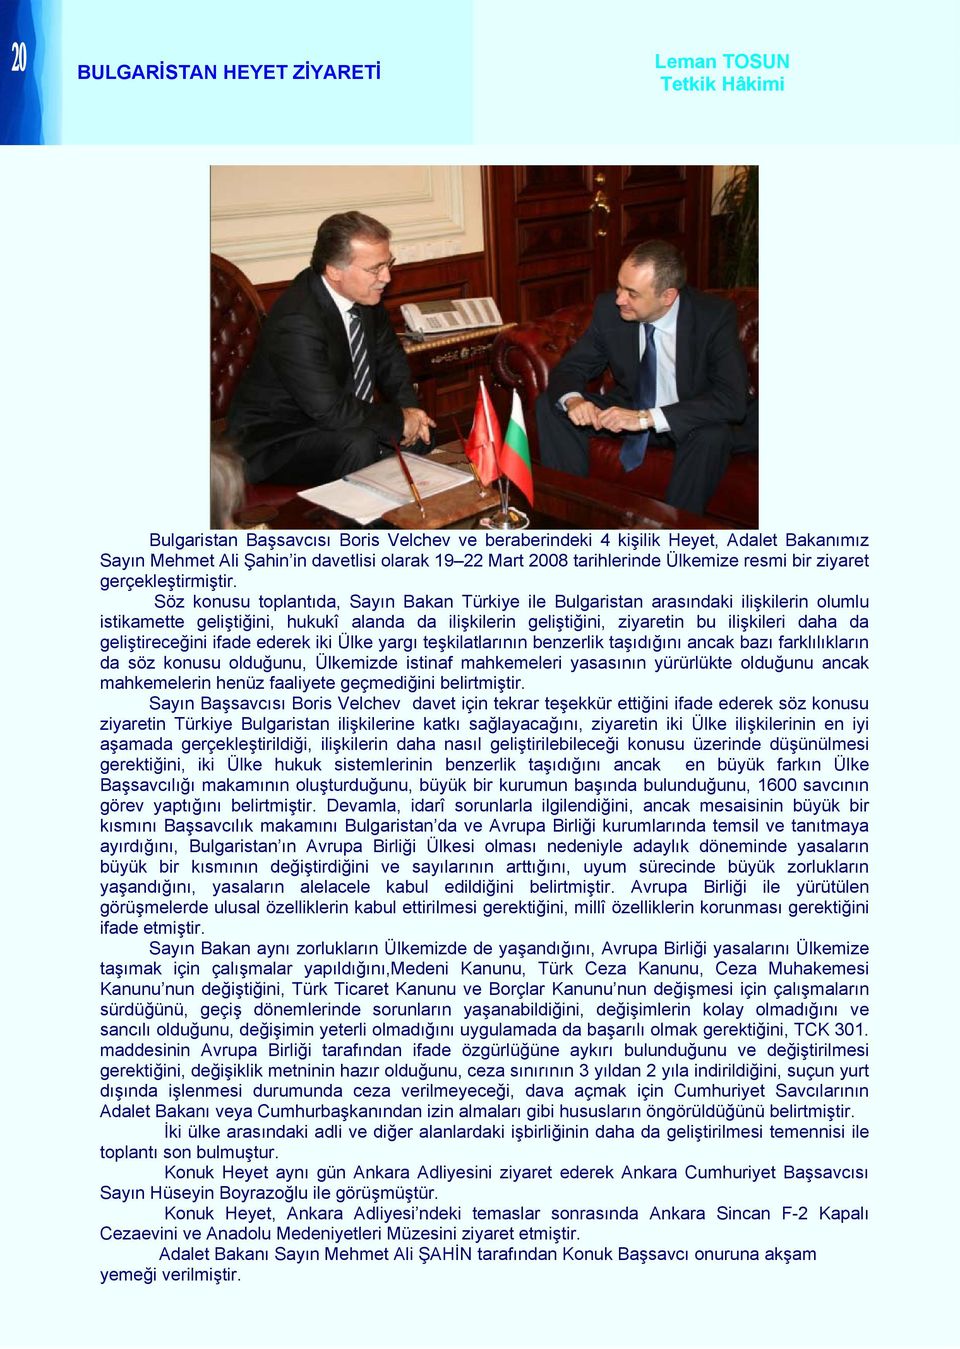 Söz konusu toplantıda, Sayın Bakan Türkiye ile Bulgaristan arasındaki ilişkilerin olumlu istikamette geliştiğini, hukukî alanda da ilişkilerin geliştiğini, ziyaretin bu ilişkileri daha da